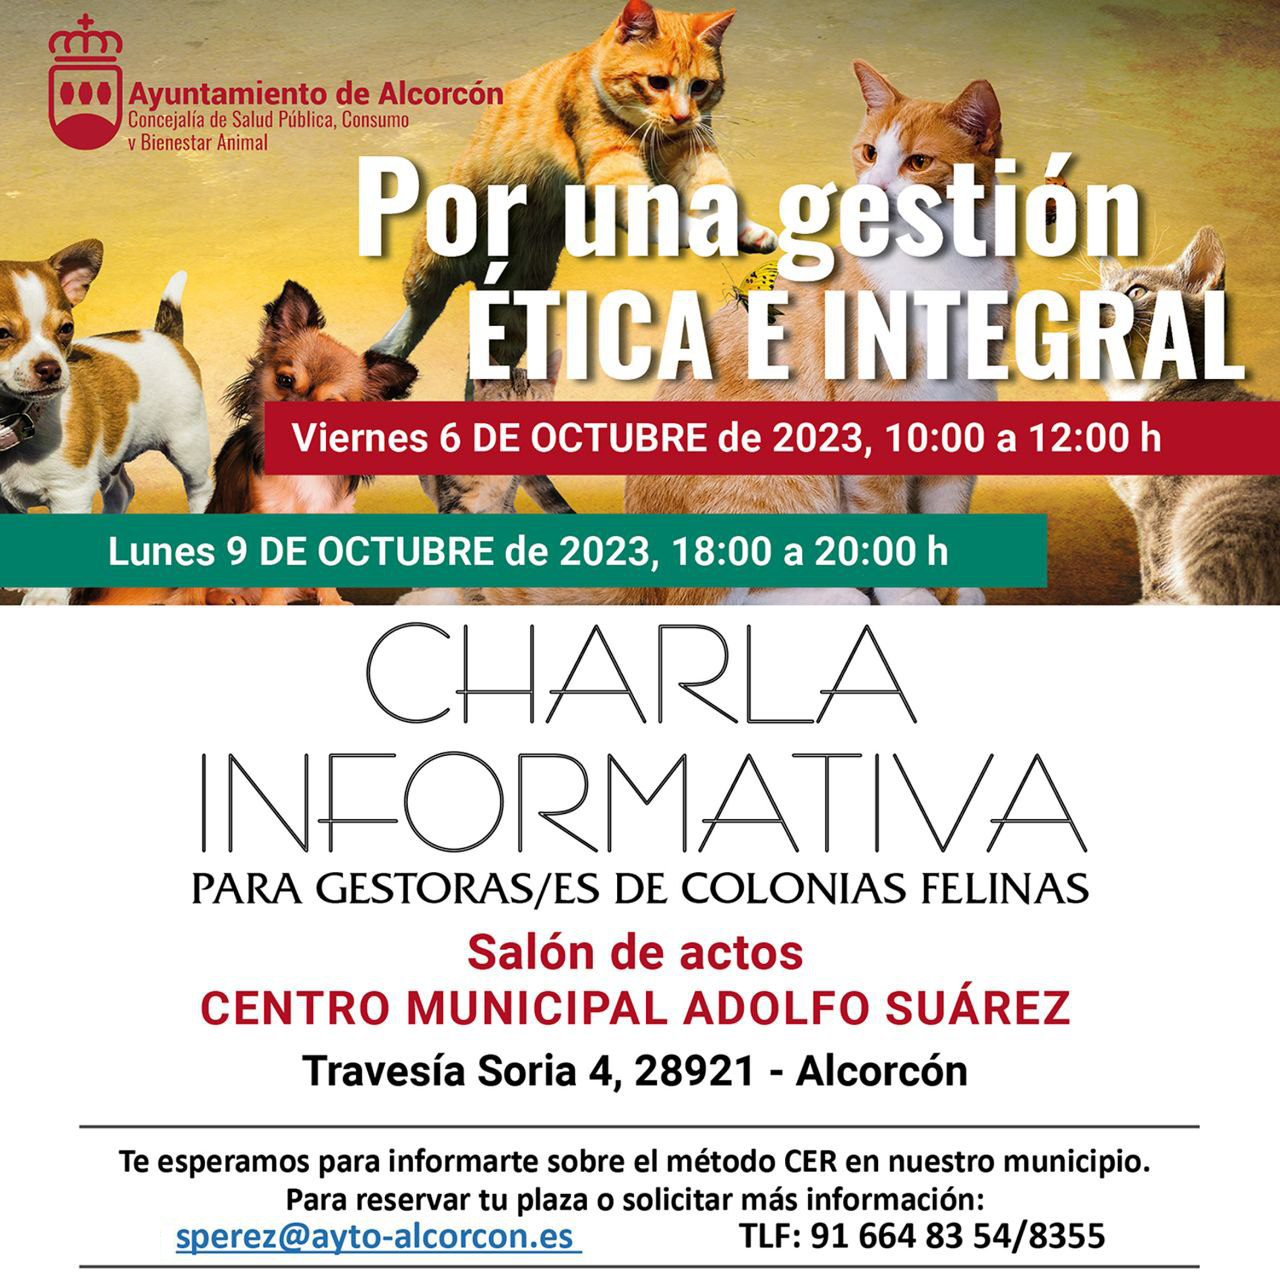 Abiertas las inscripciones para la charla informativa a gestores de colonias felinas en Alcorcón